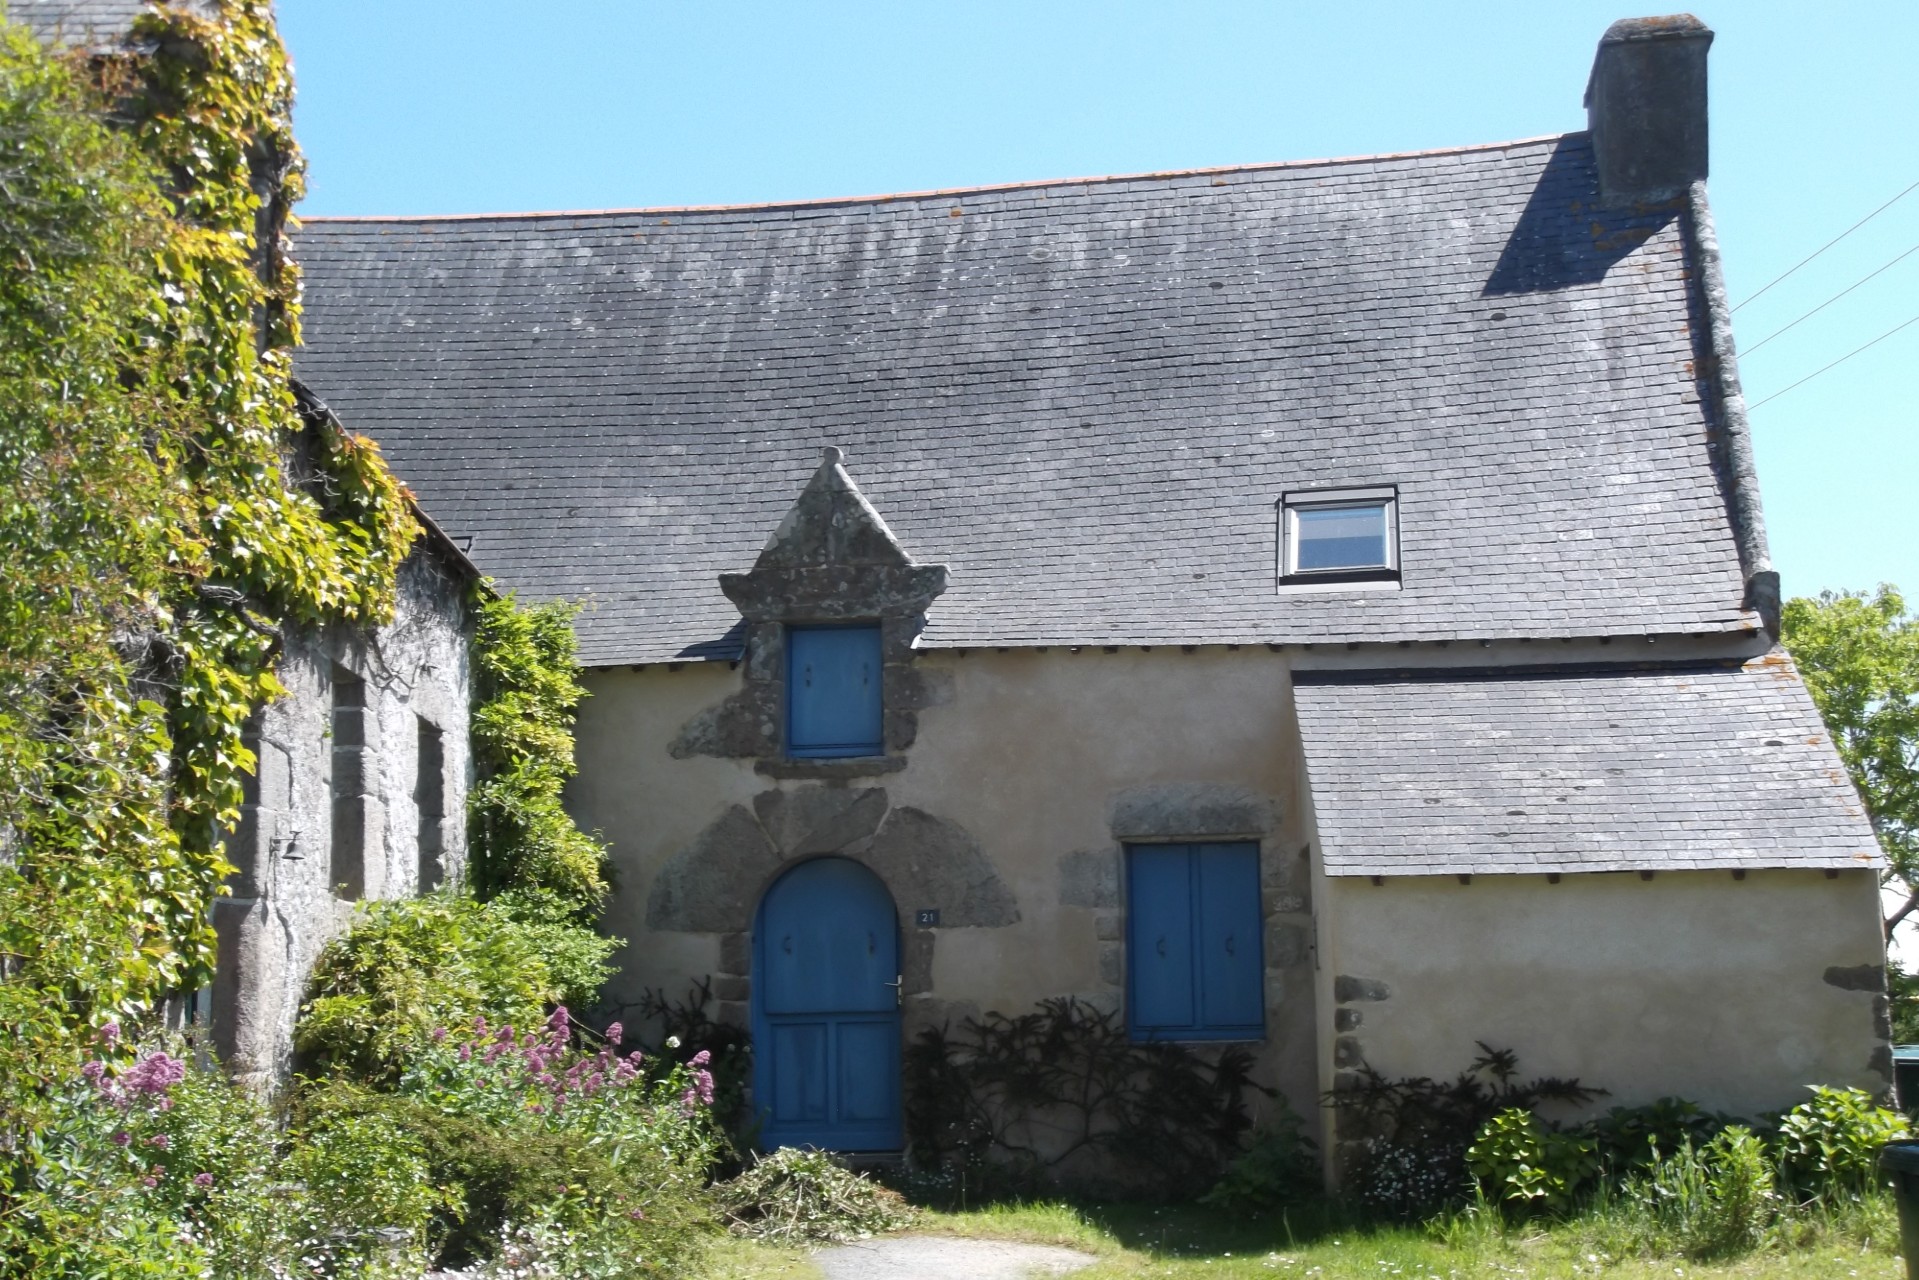 Maison paludière du village de Queniquen à Guérande - © Office de Tourisme de Guérande